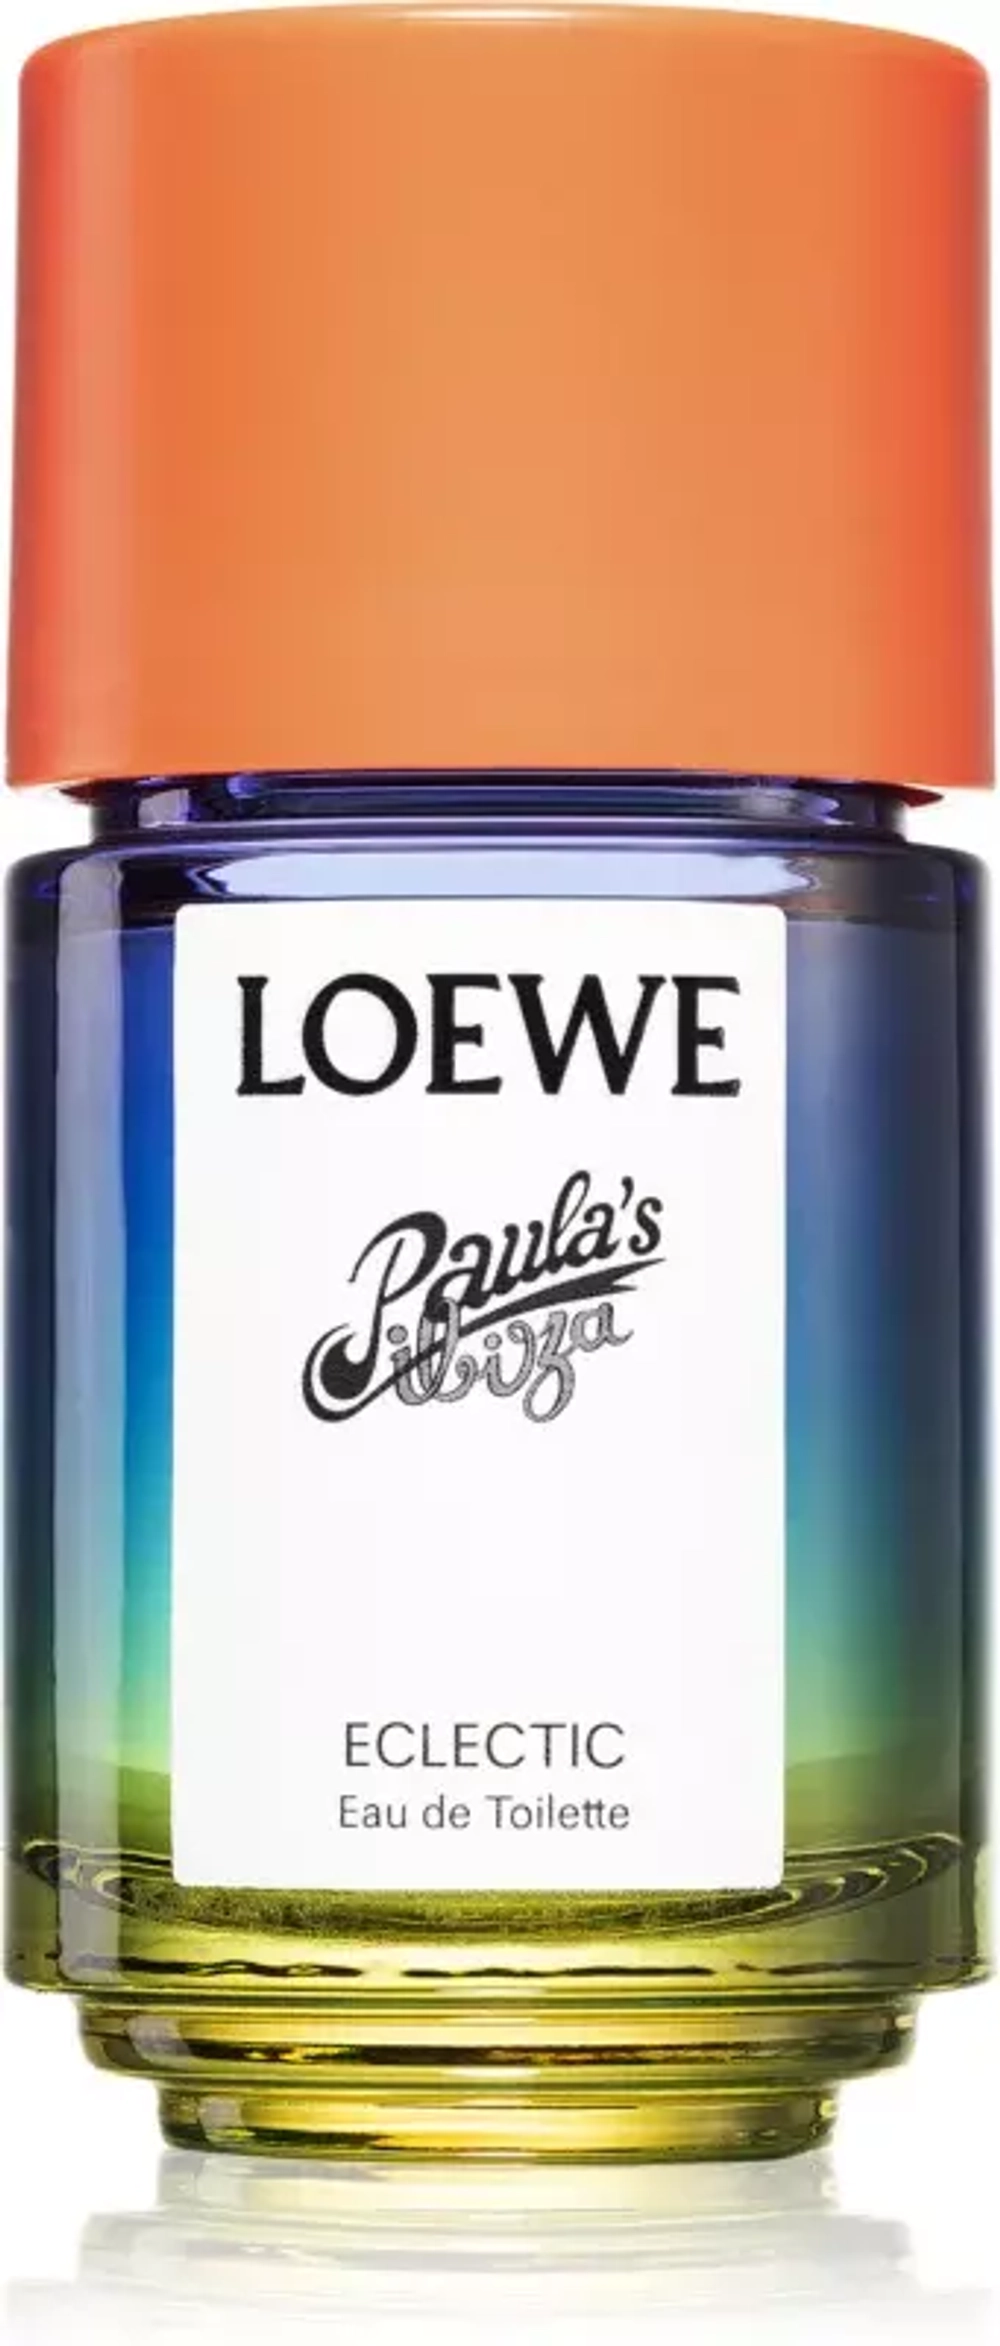 Loewe Paula’s Ibiza Eclectic